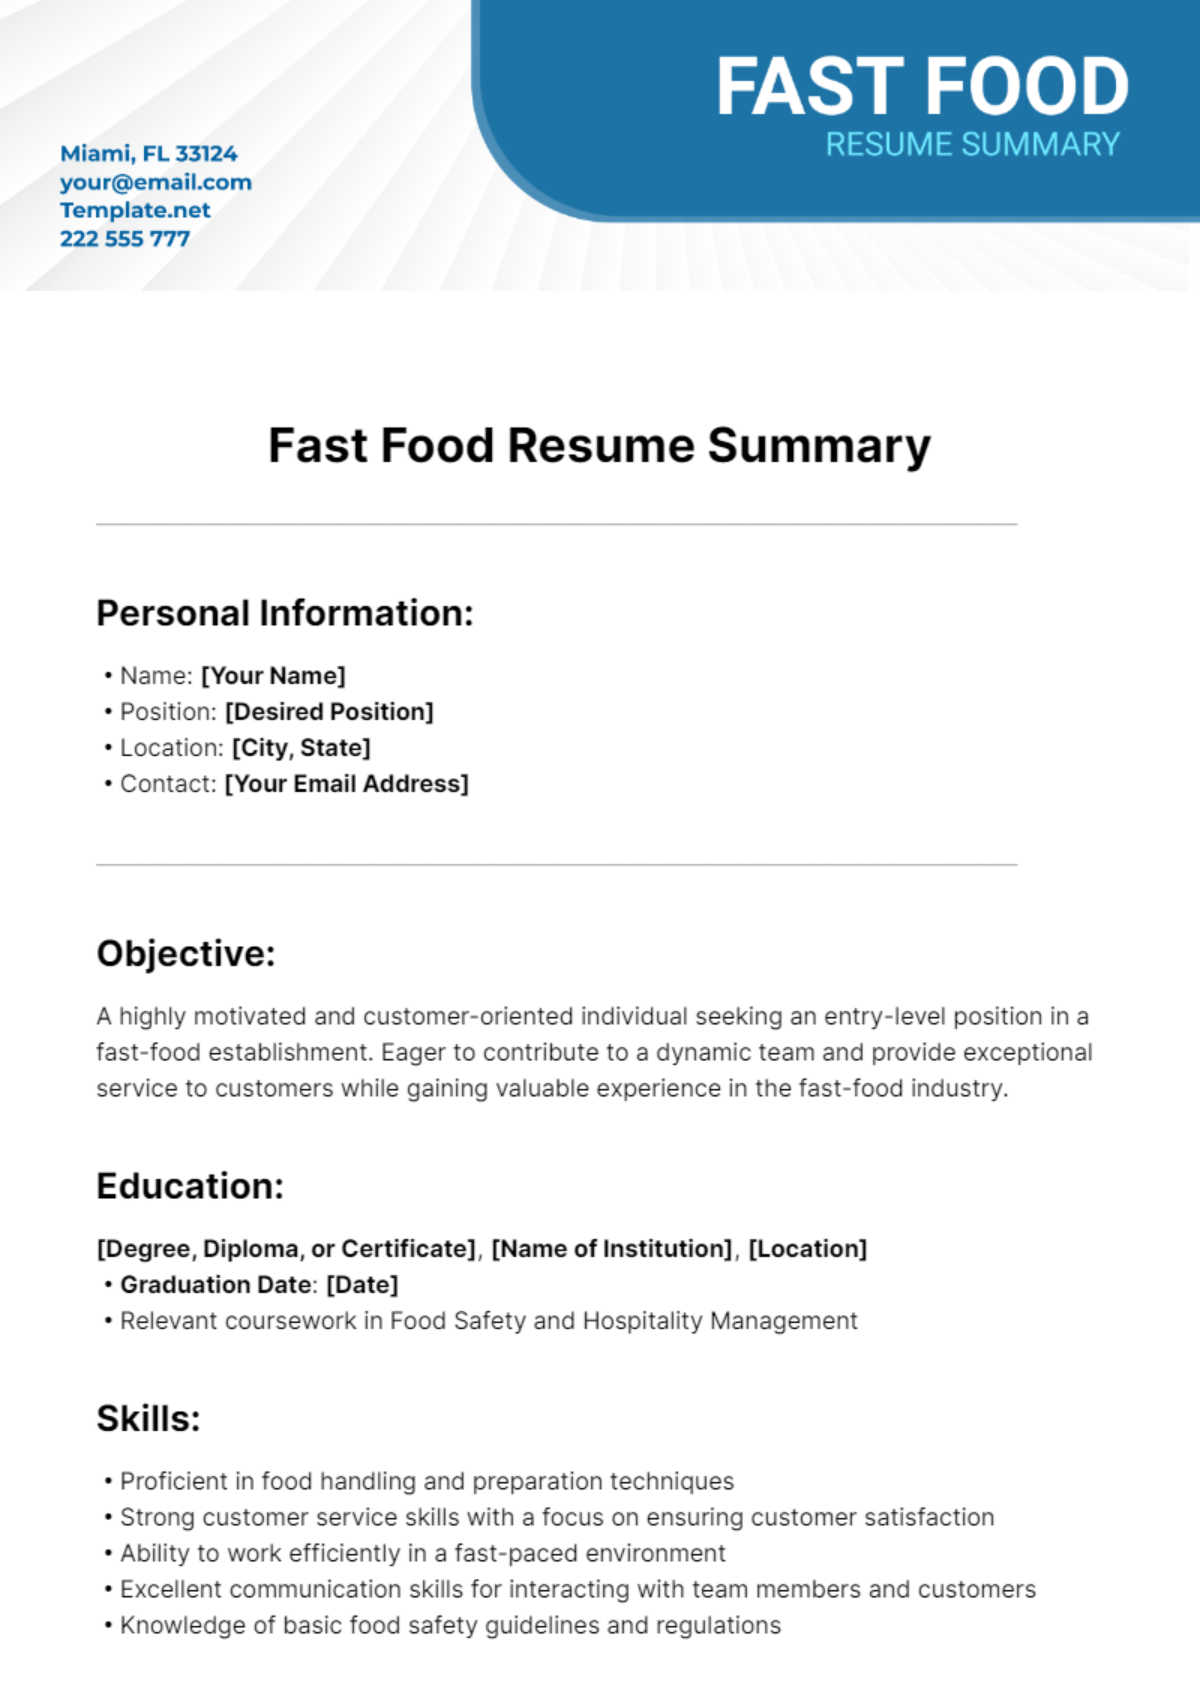 Fast Food Resume Summary Template